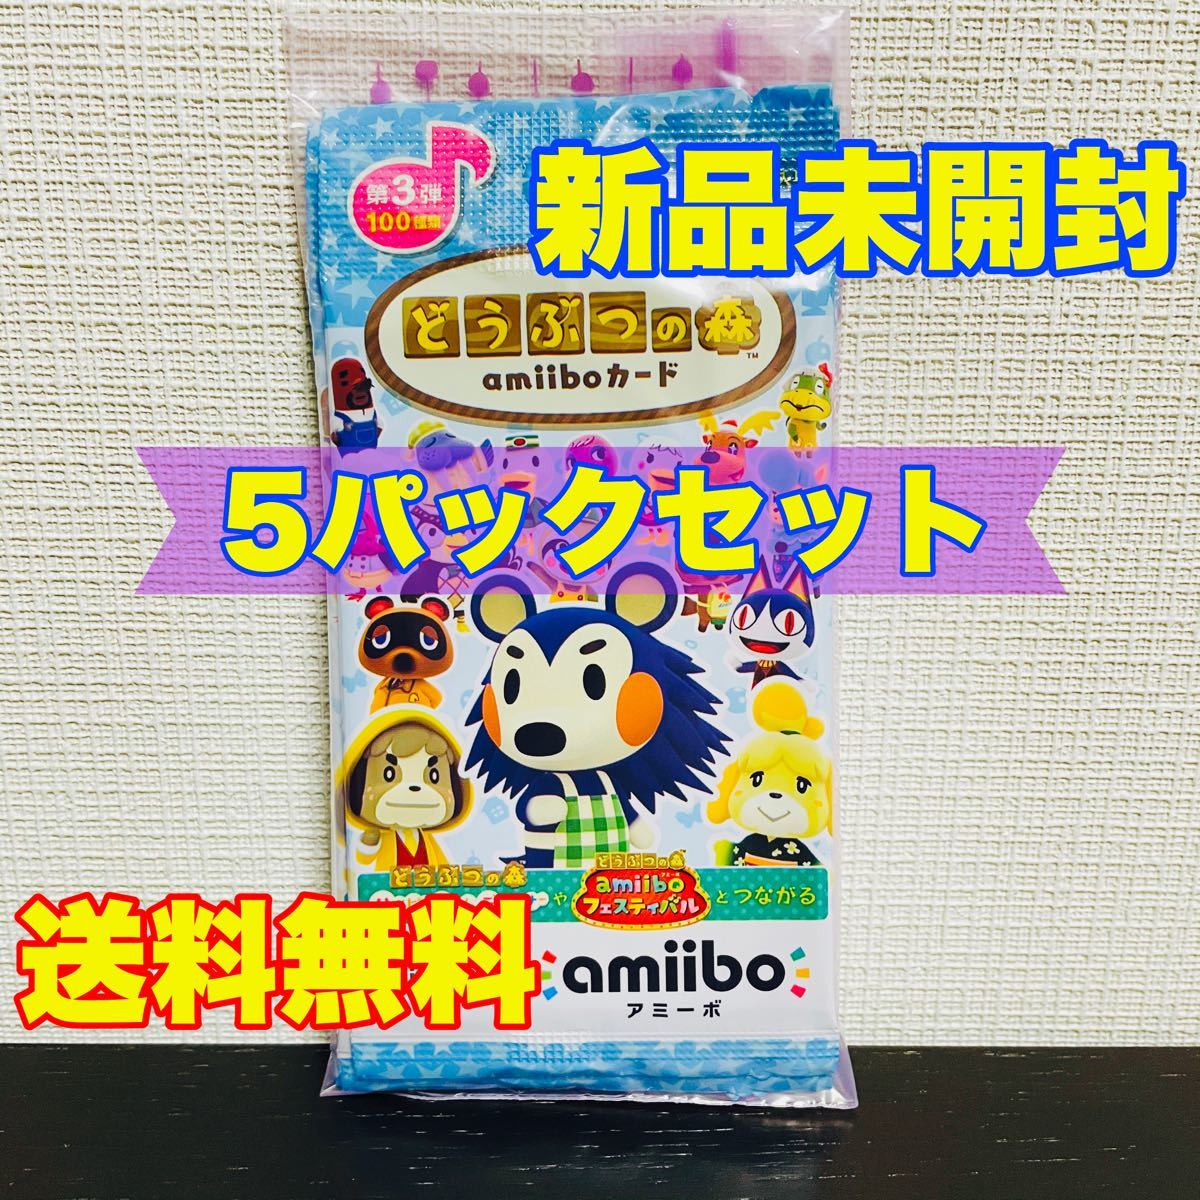 新品 未開封 純正 任天堂 どうぶつの森 amiiboカード 第3弾 5パック セット Nintendo Switch アミーボ